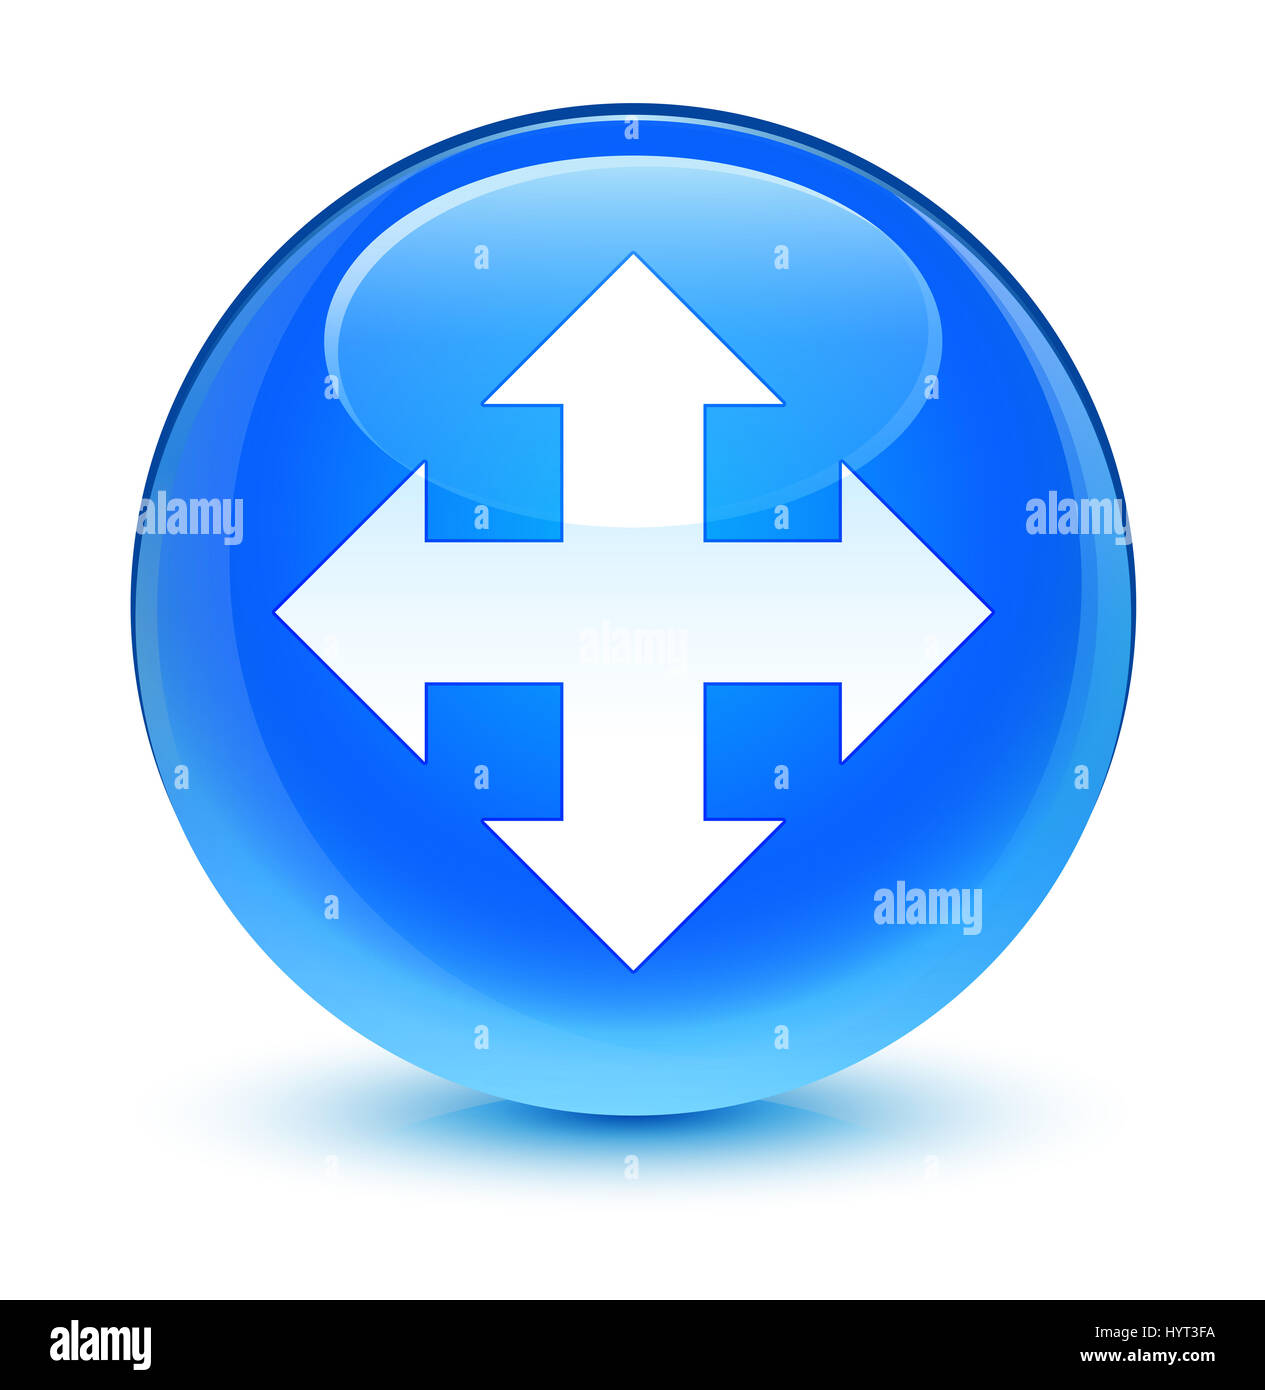 L'icône Déplacer isolé sur le bouton rond bleu cyan vitreux abstract illustration Banque D'Images